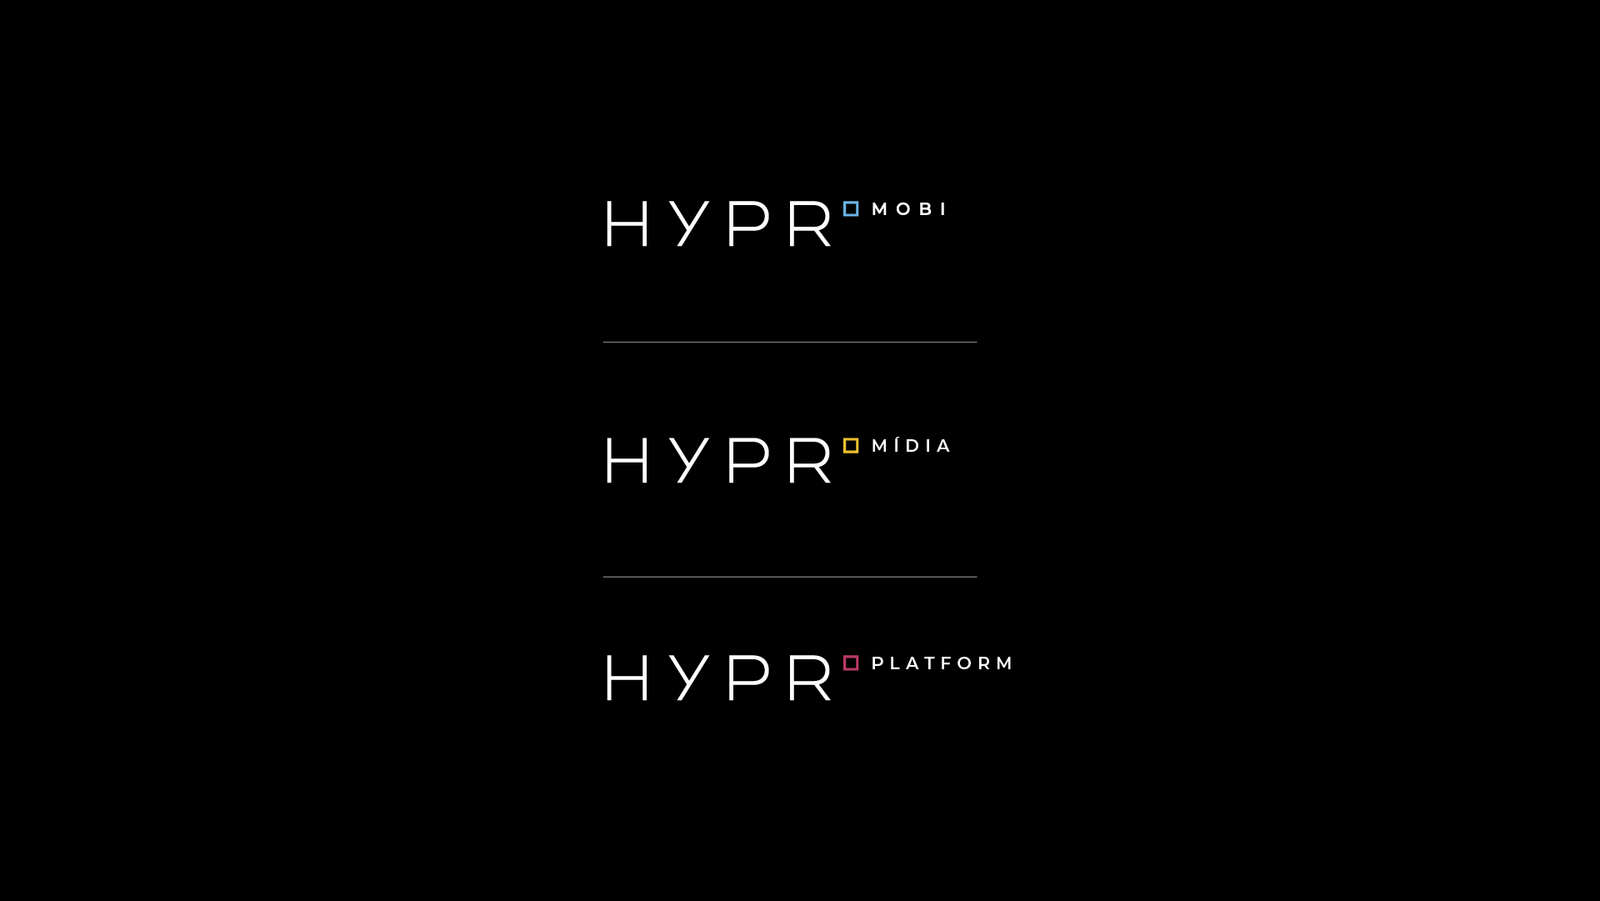 fundo preto com três logotipos hypr